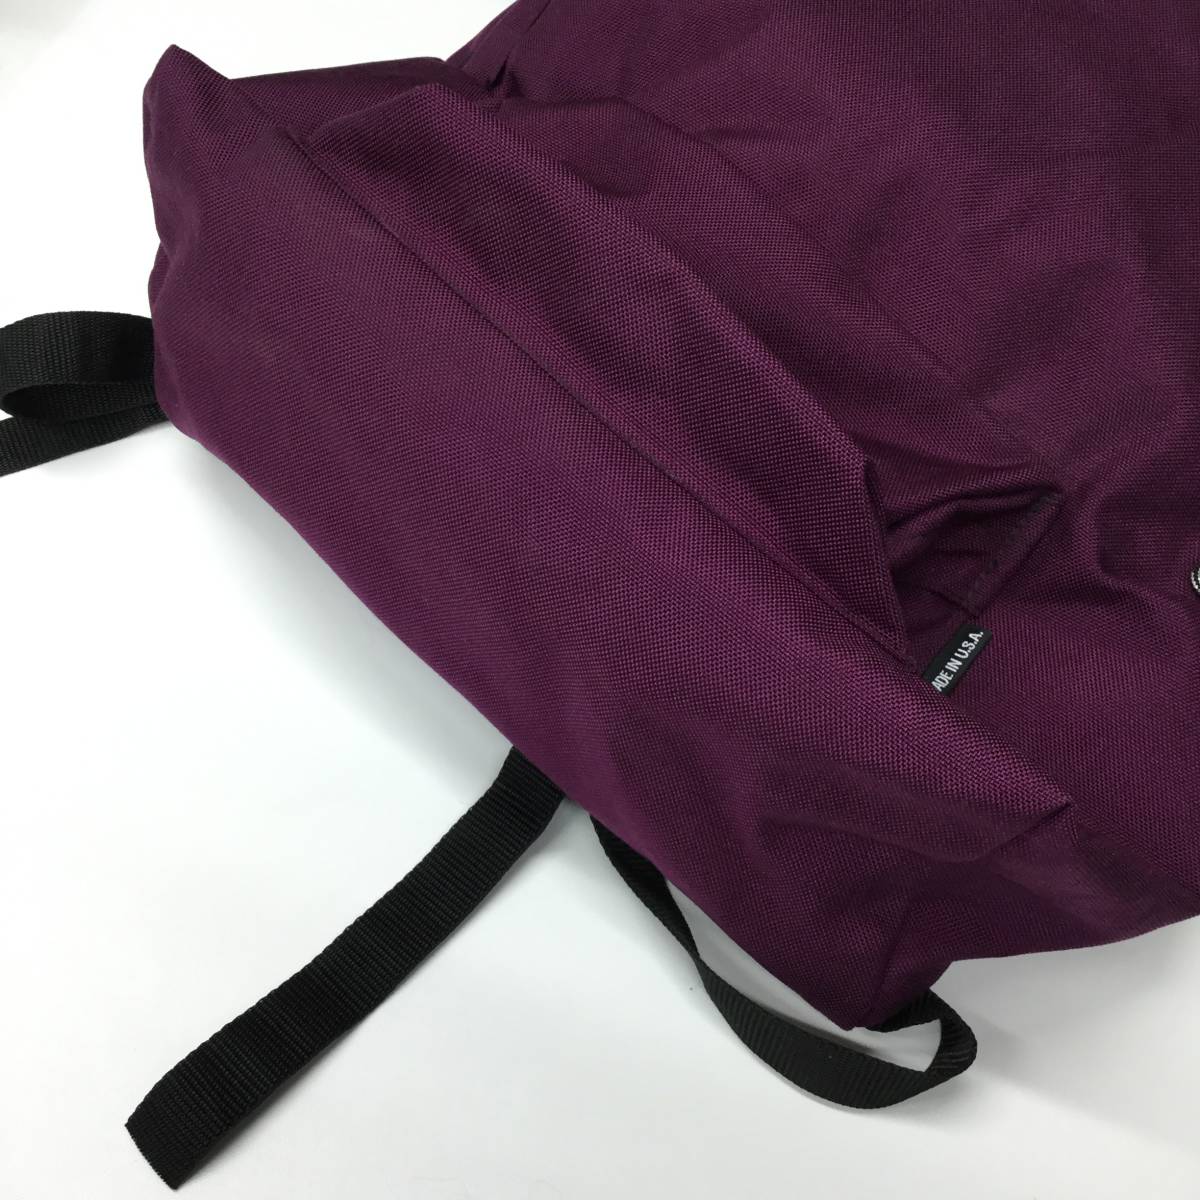  товар в хорошем состоянии  90s USA пр-во    на улице   продукция  OUTDOOR PRODUCTS  рюкзак    рюкзак   фиолетовый 